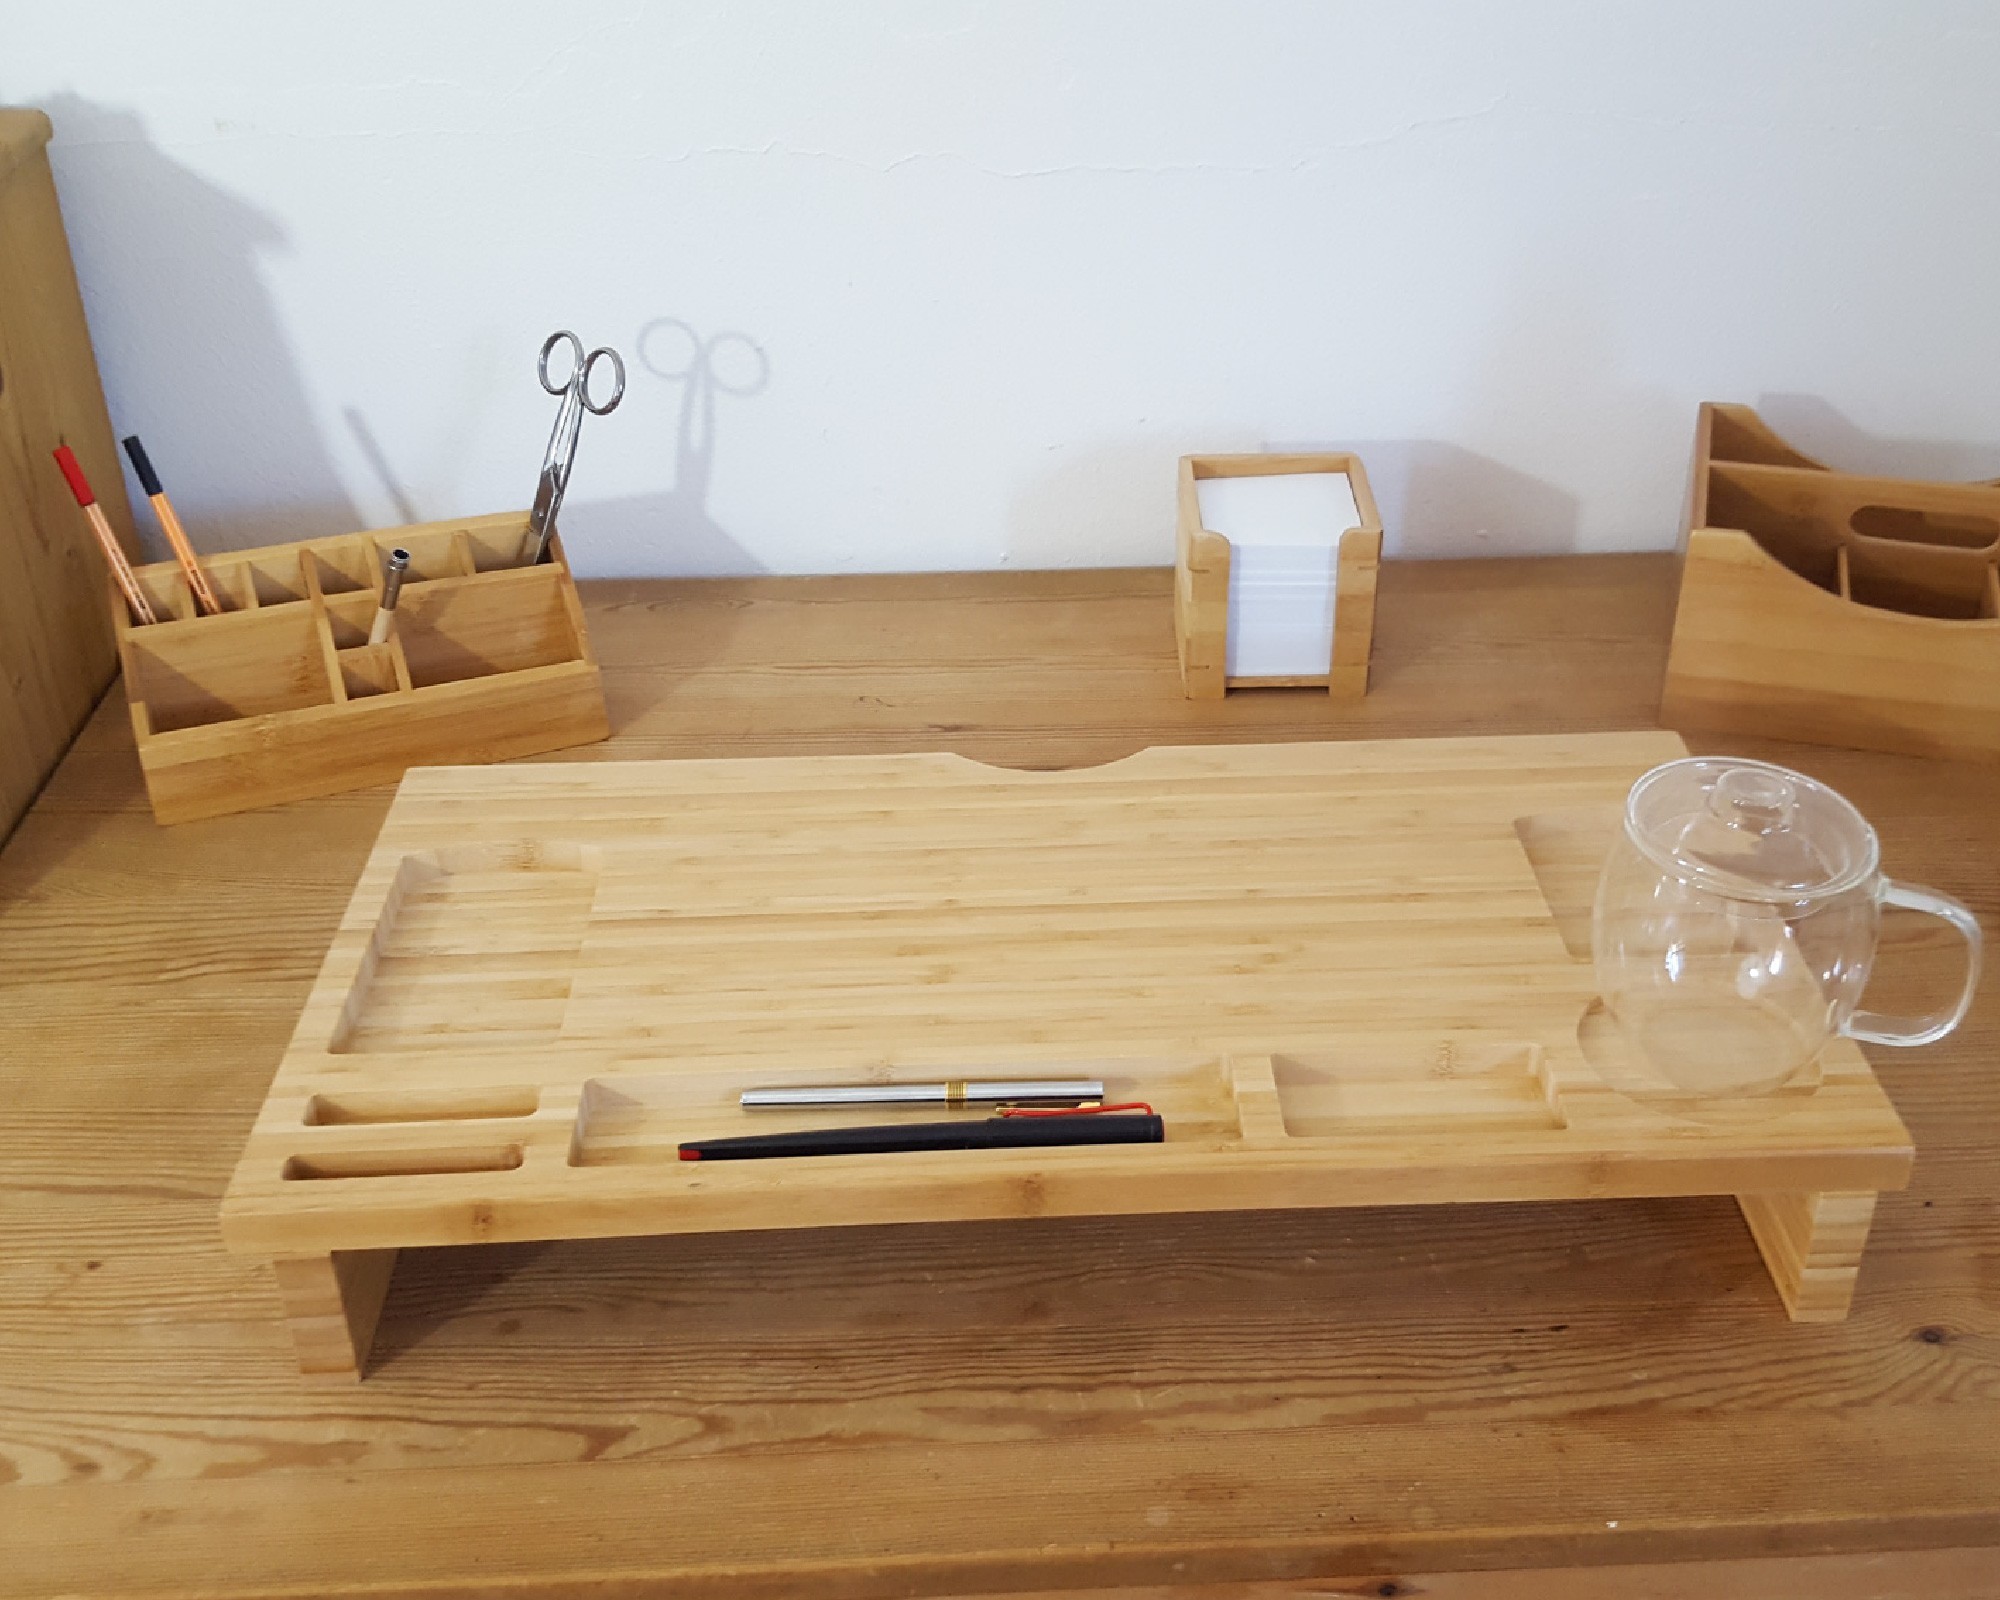 Beige DOITOOL Make-Up Organizer Kunststoff Kosmetik Box Organizer Schreibtische Regale Desktop Kleinigkeiten Fall mit Bambus Trennwand für zu Hause Bad Küche